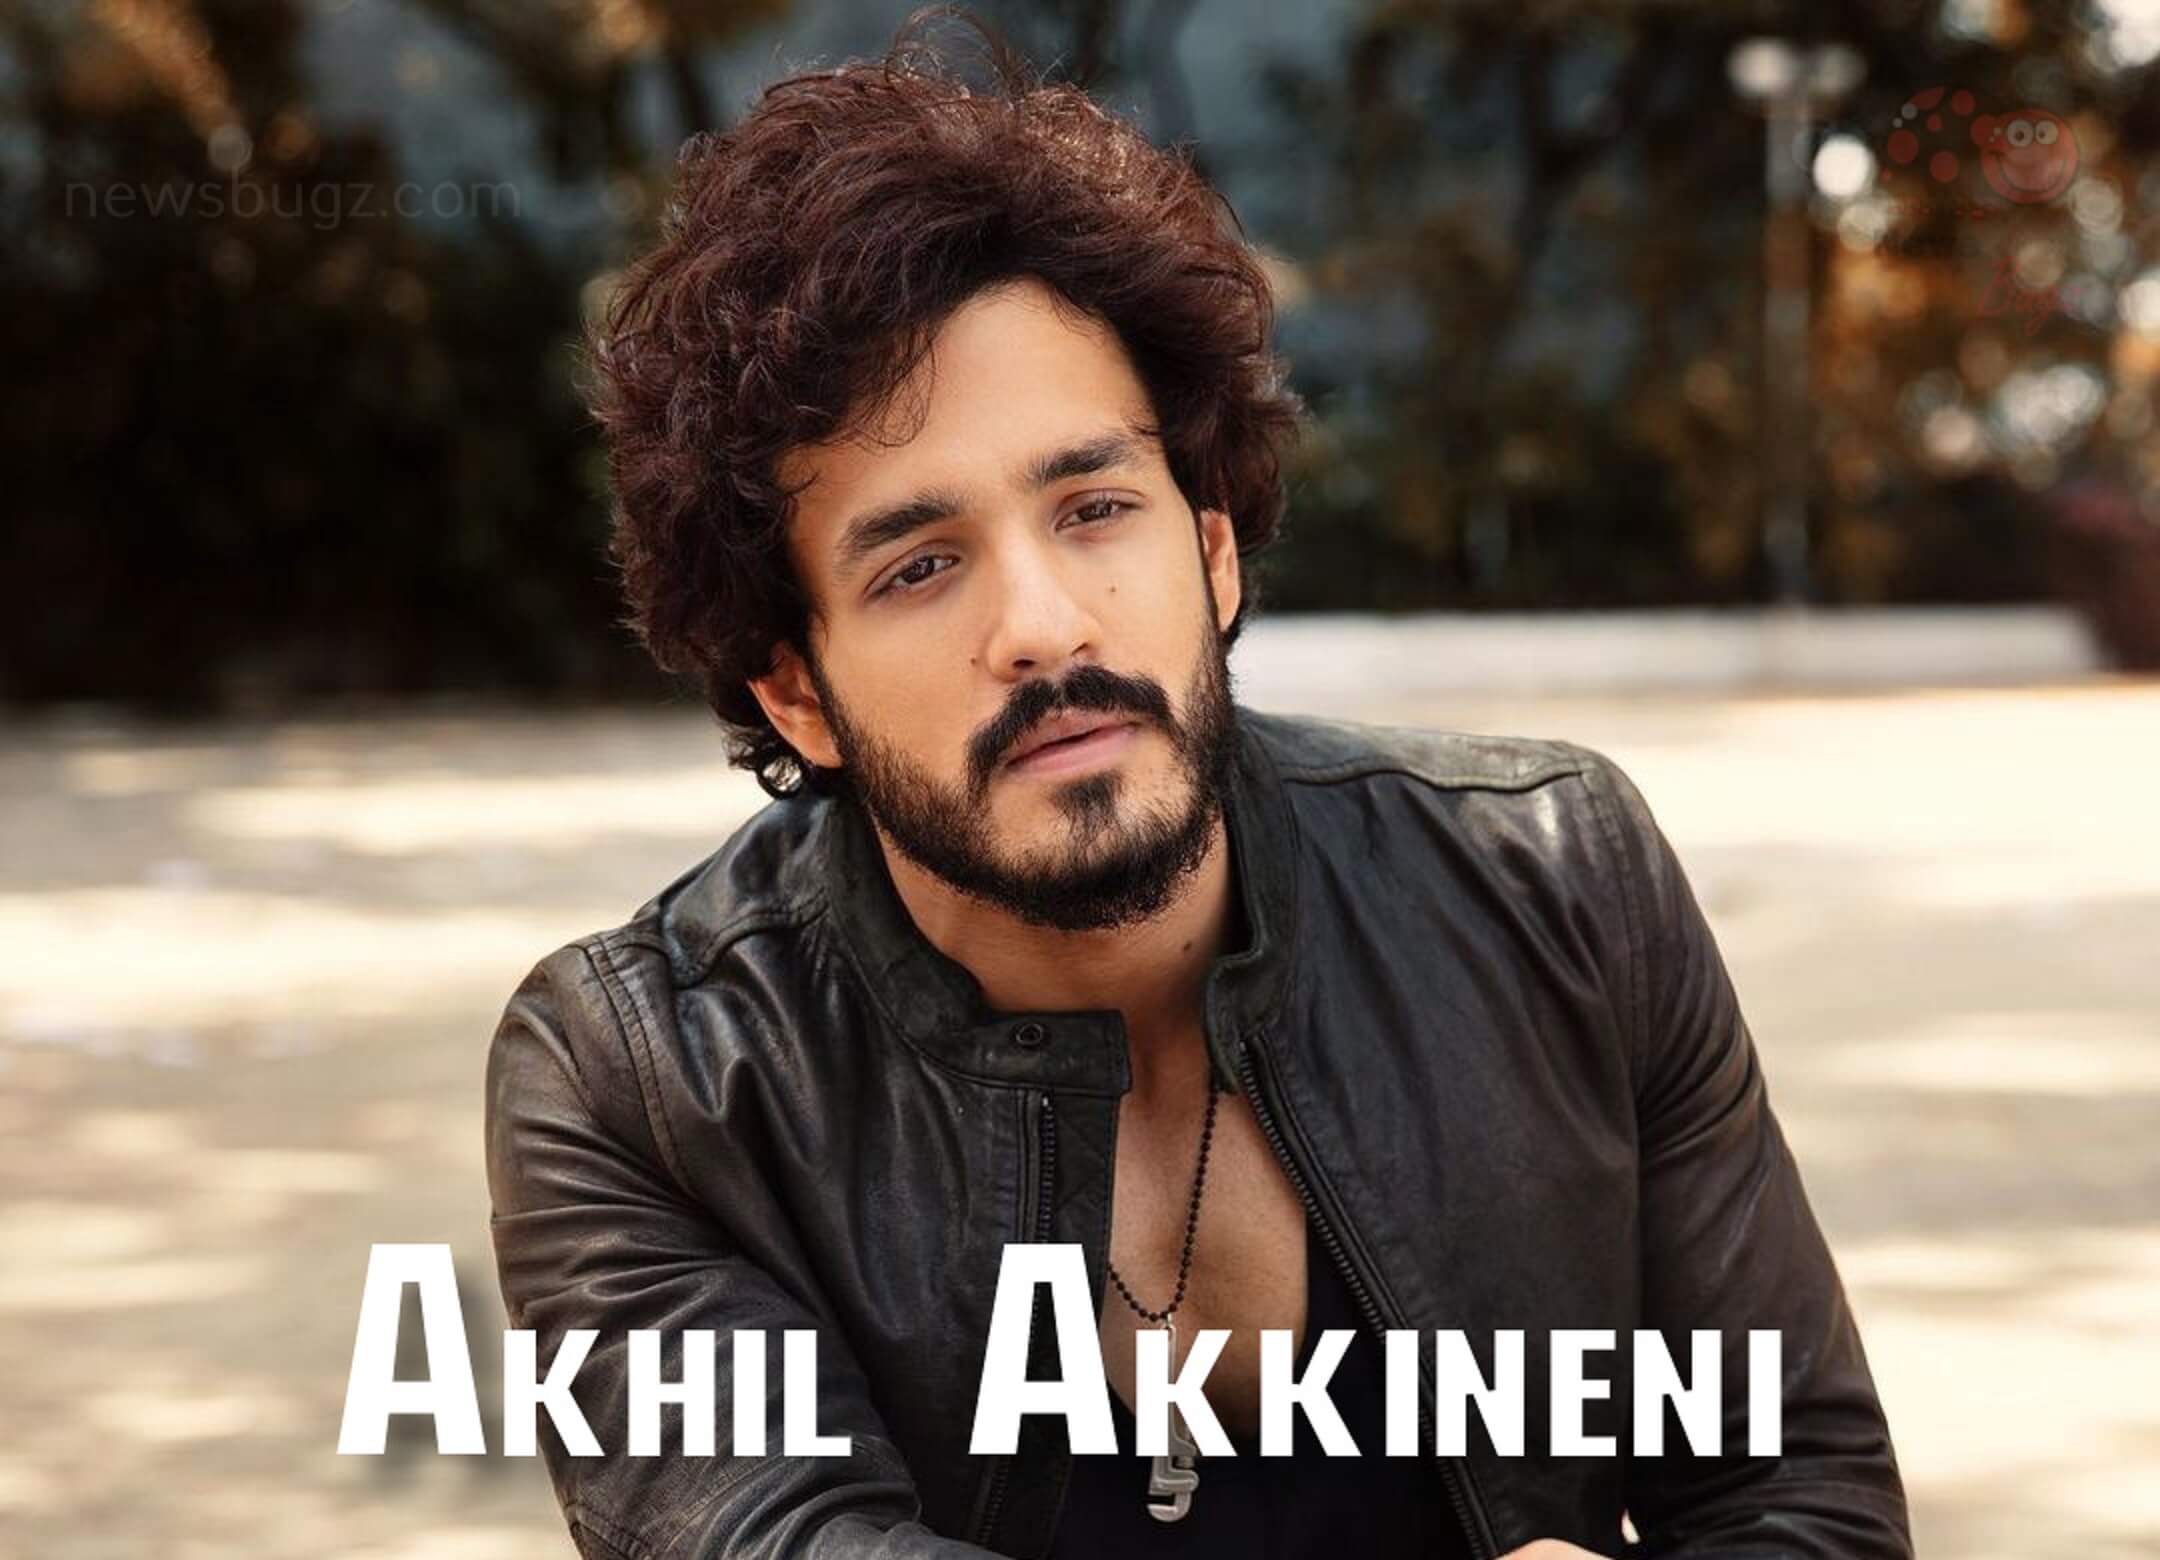 Akhil Akkineni